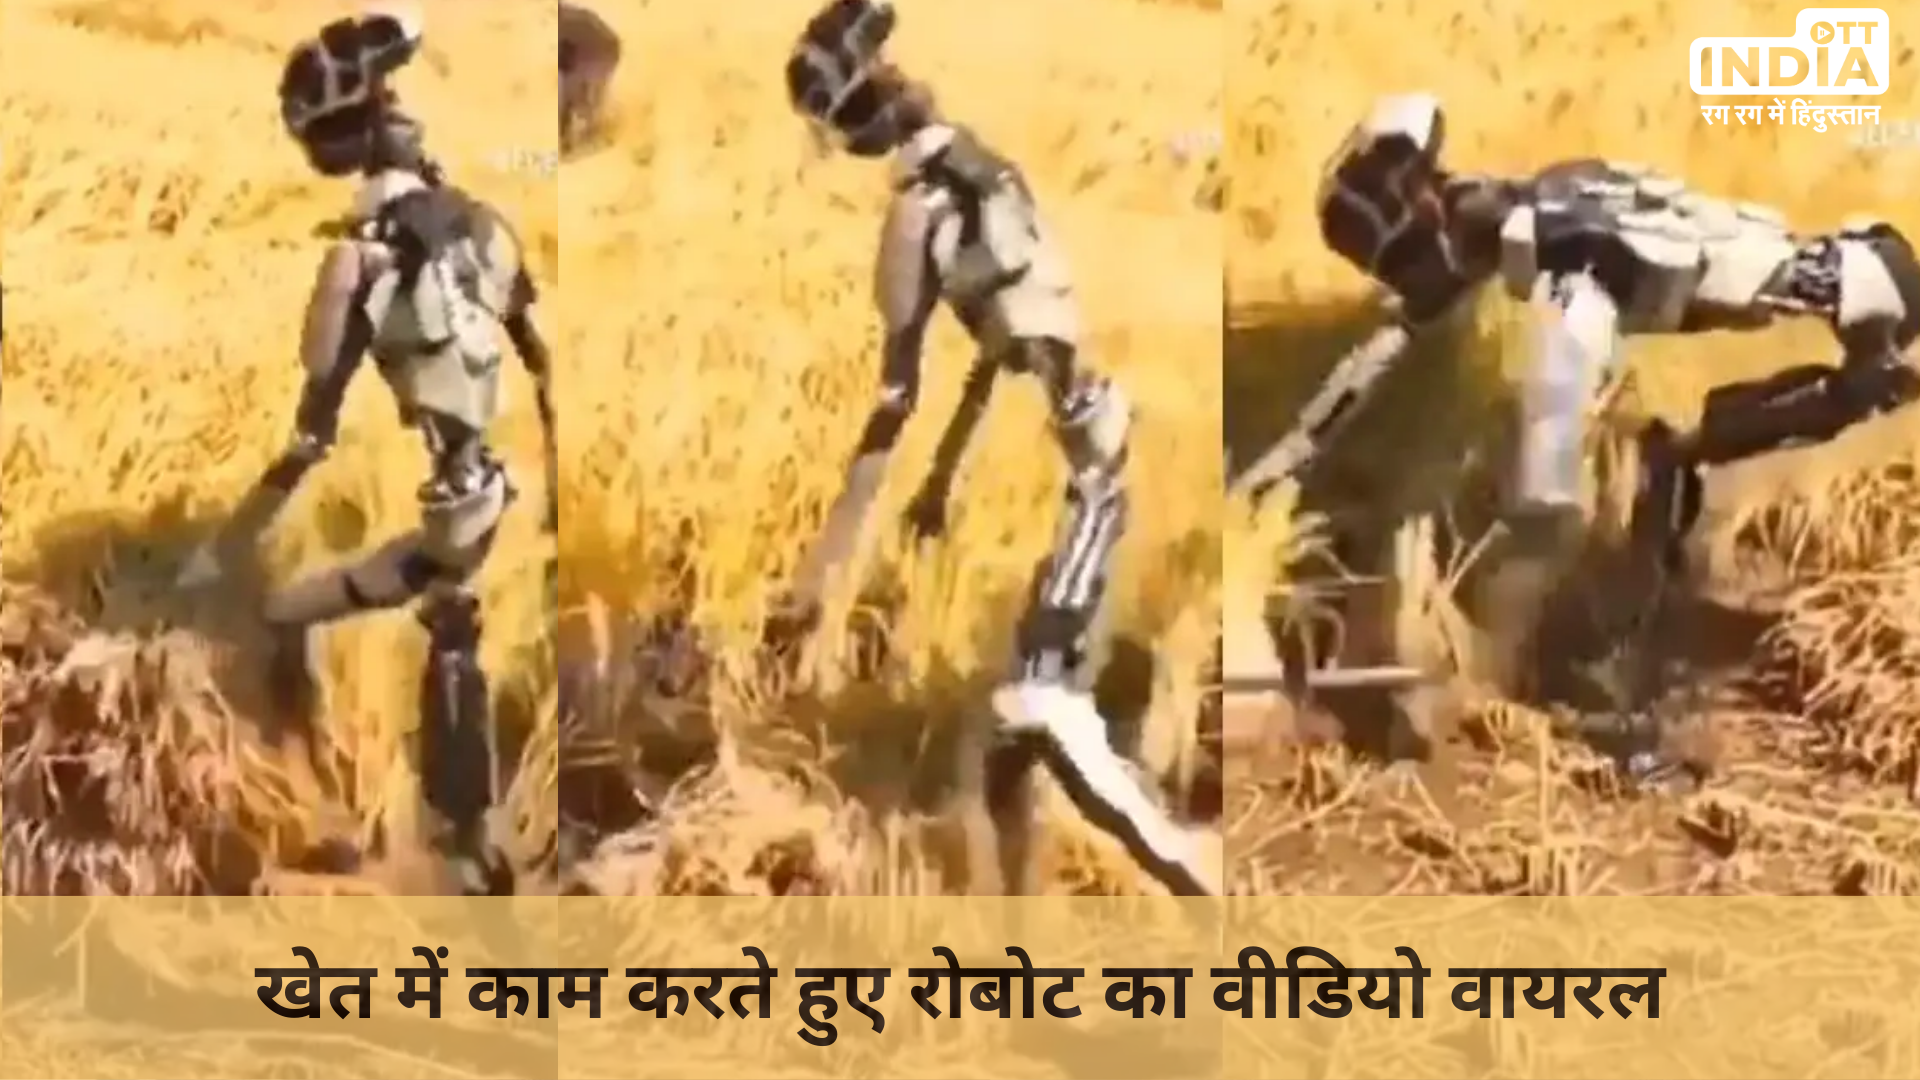 Robot Working Video Viral: खेत में इंसान की जगह रोबोट का काम करते हुए वीडियो हुआ वायरल, क्या आपने देखा, हमारा आने वाला भविष्य